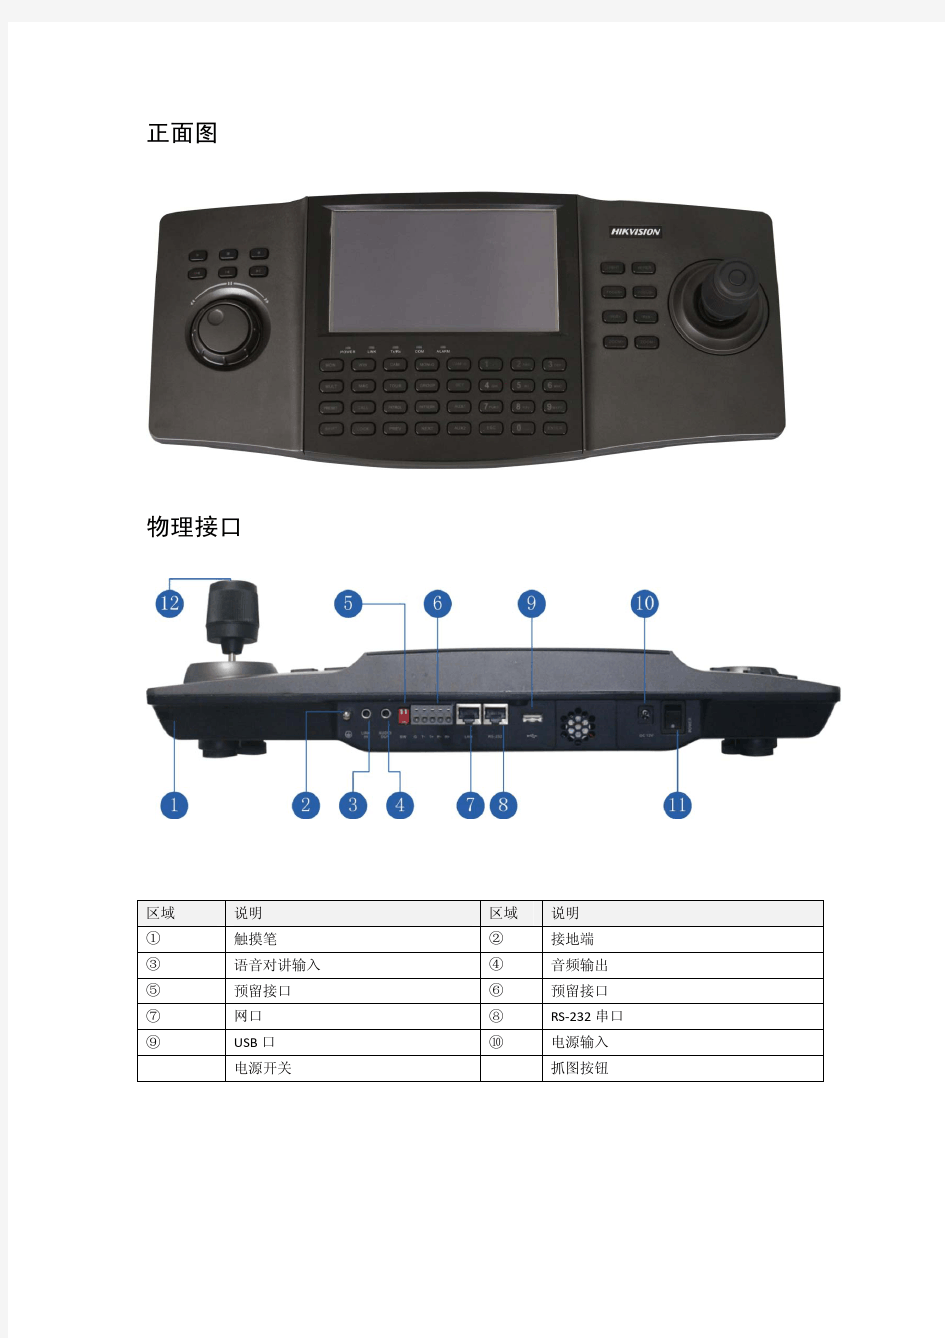 海康DS-1100K网络控制键盘说明书